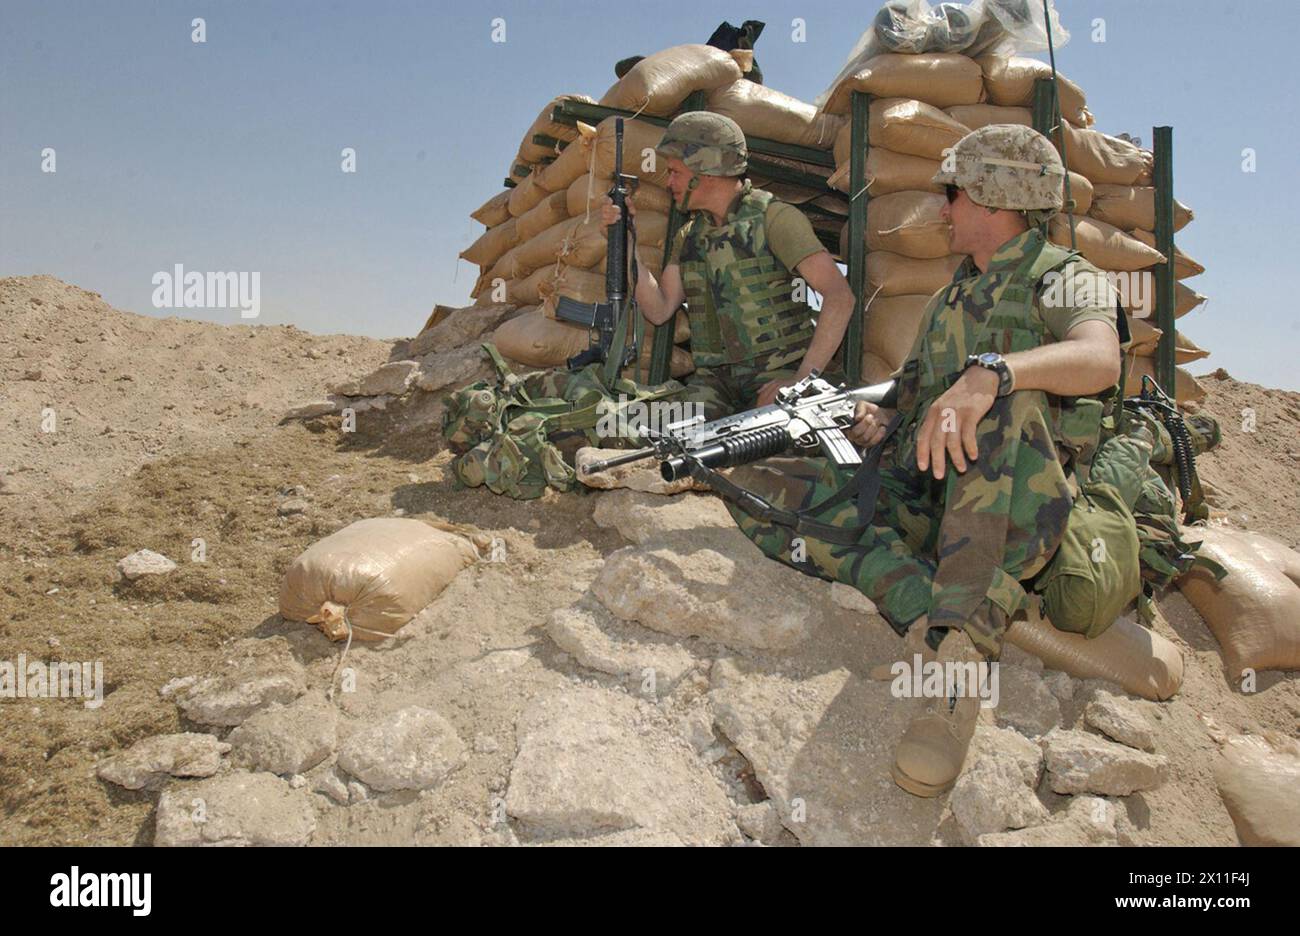 Brian Fisher (links), aus Forked River, N.J., und Christopher Wright von Company F, 2. Bataillon, 6. Marines, aus Aiken, S.C., man bemannt einen Bunker am Rand ihres Basislagers. Das 2. Bataillon, 6. Marines, hat ein temporäres Basislager errichtet, während sie auf weitere Kampfeinsätze (Irak) warten. März 2004 Stockfoto